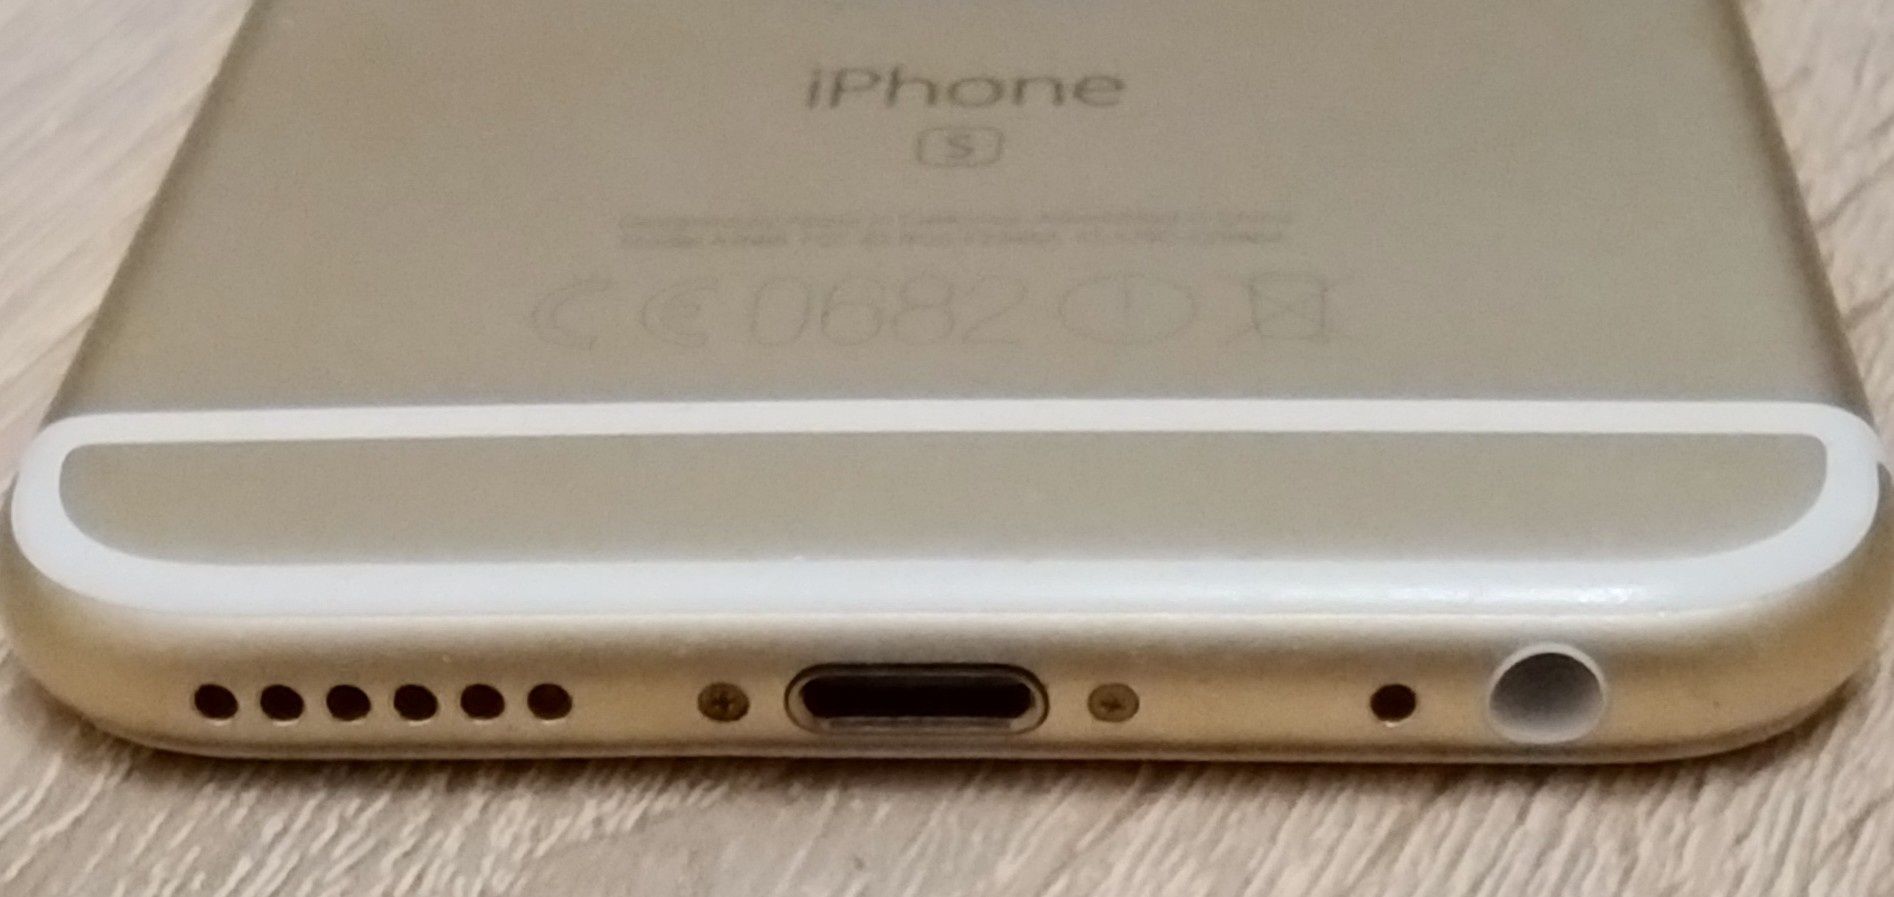 iPhone S złoty nie włącza się